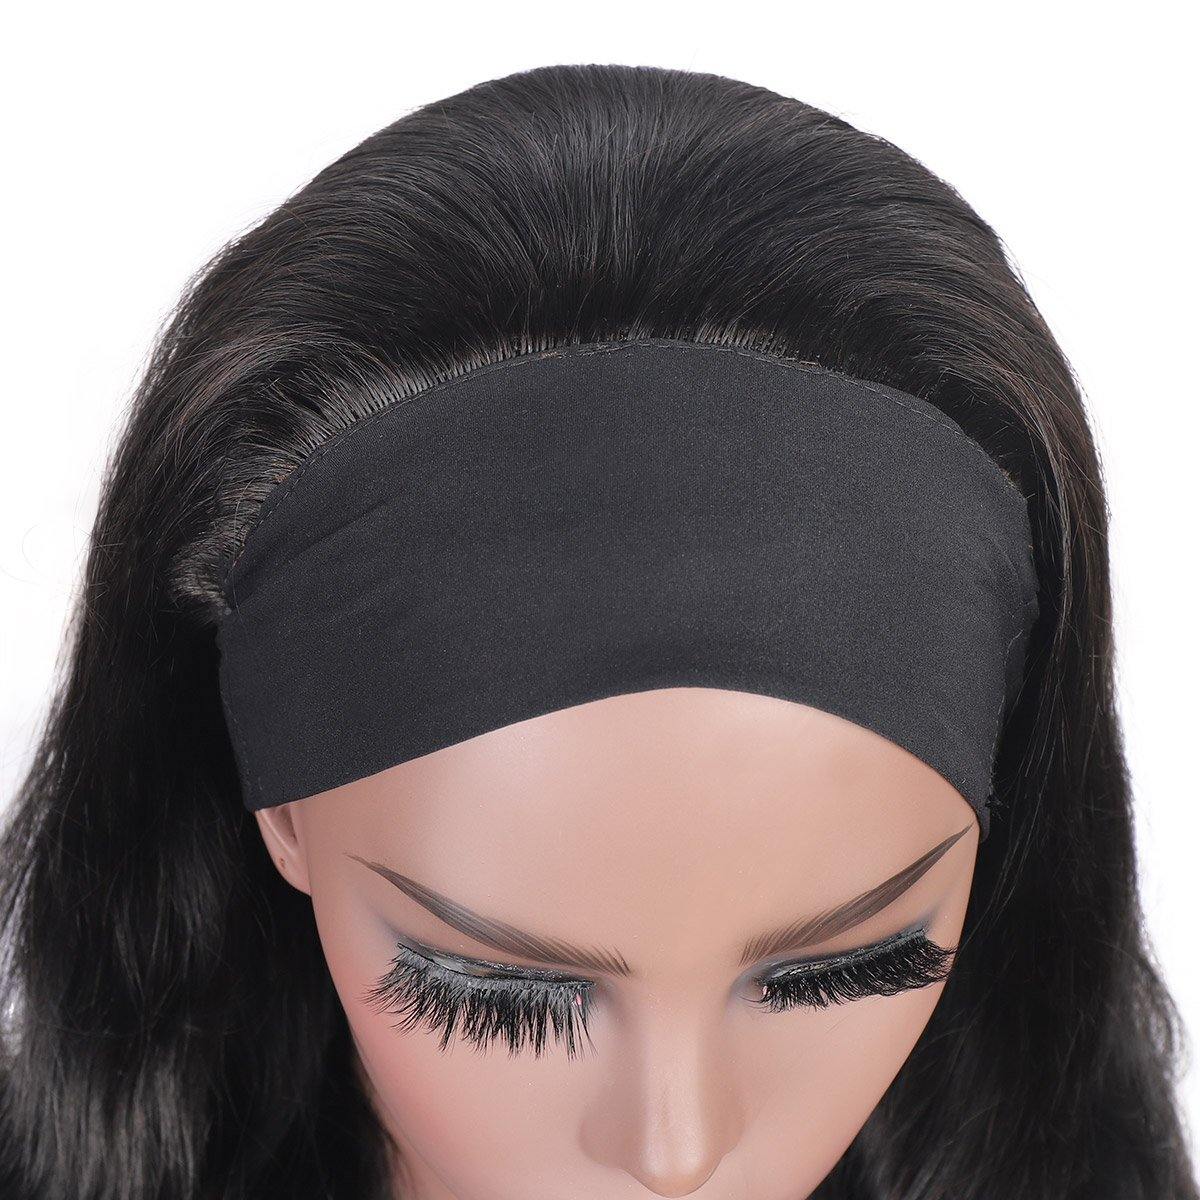 Meetu Body Wave Hair Headband Wig Affordable Natural Hair Half Wigs - MeetuHair